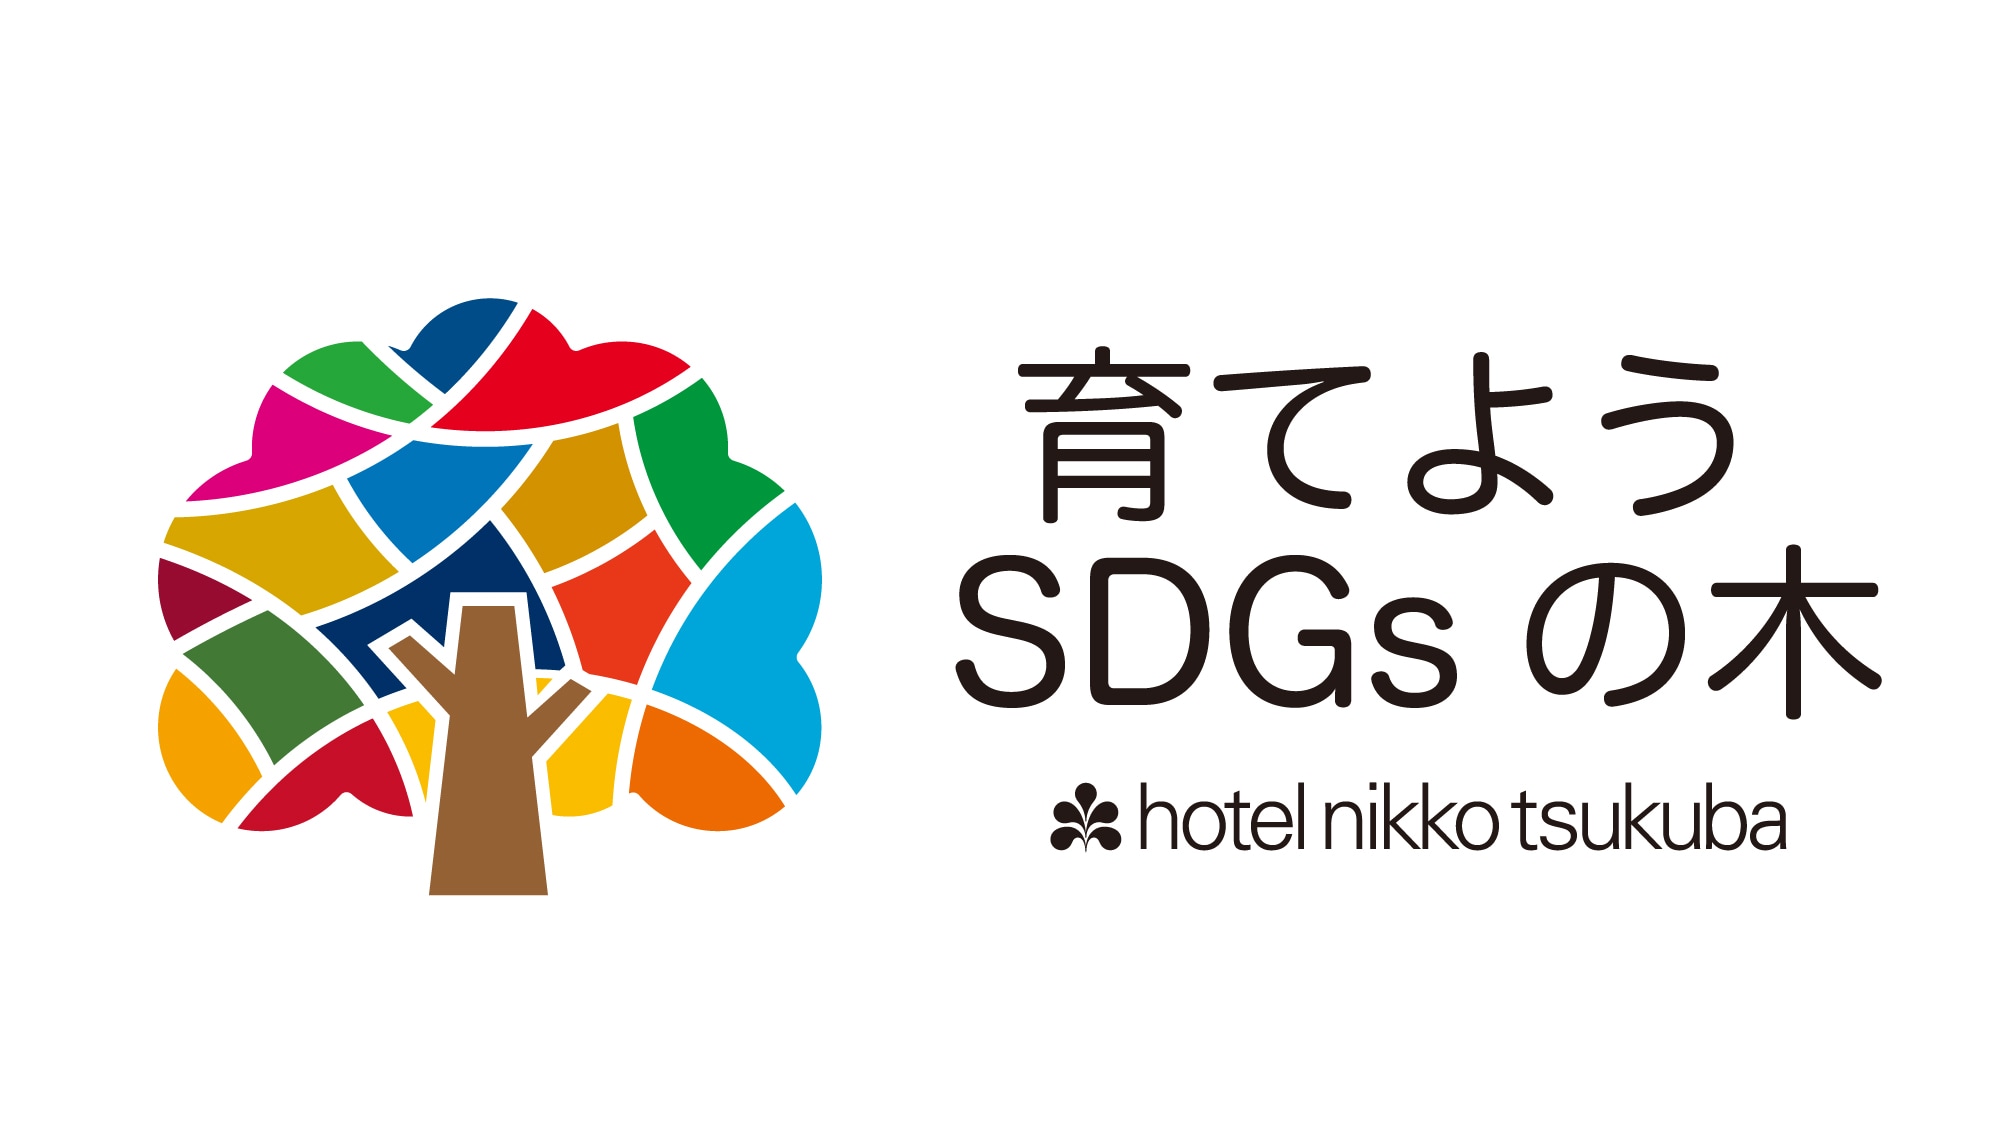 Hotel Nikko Tsukuba mendukung kegiatan SDGs